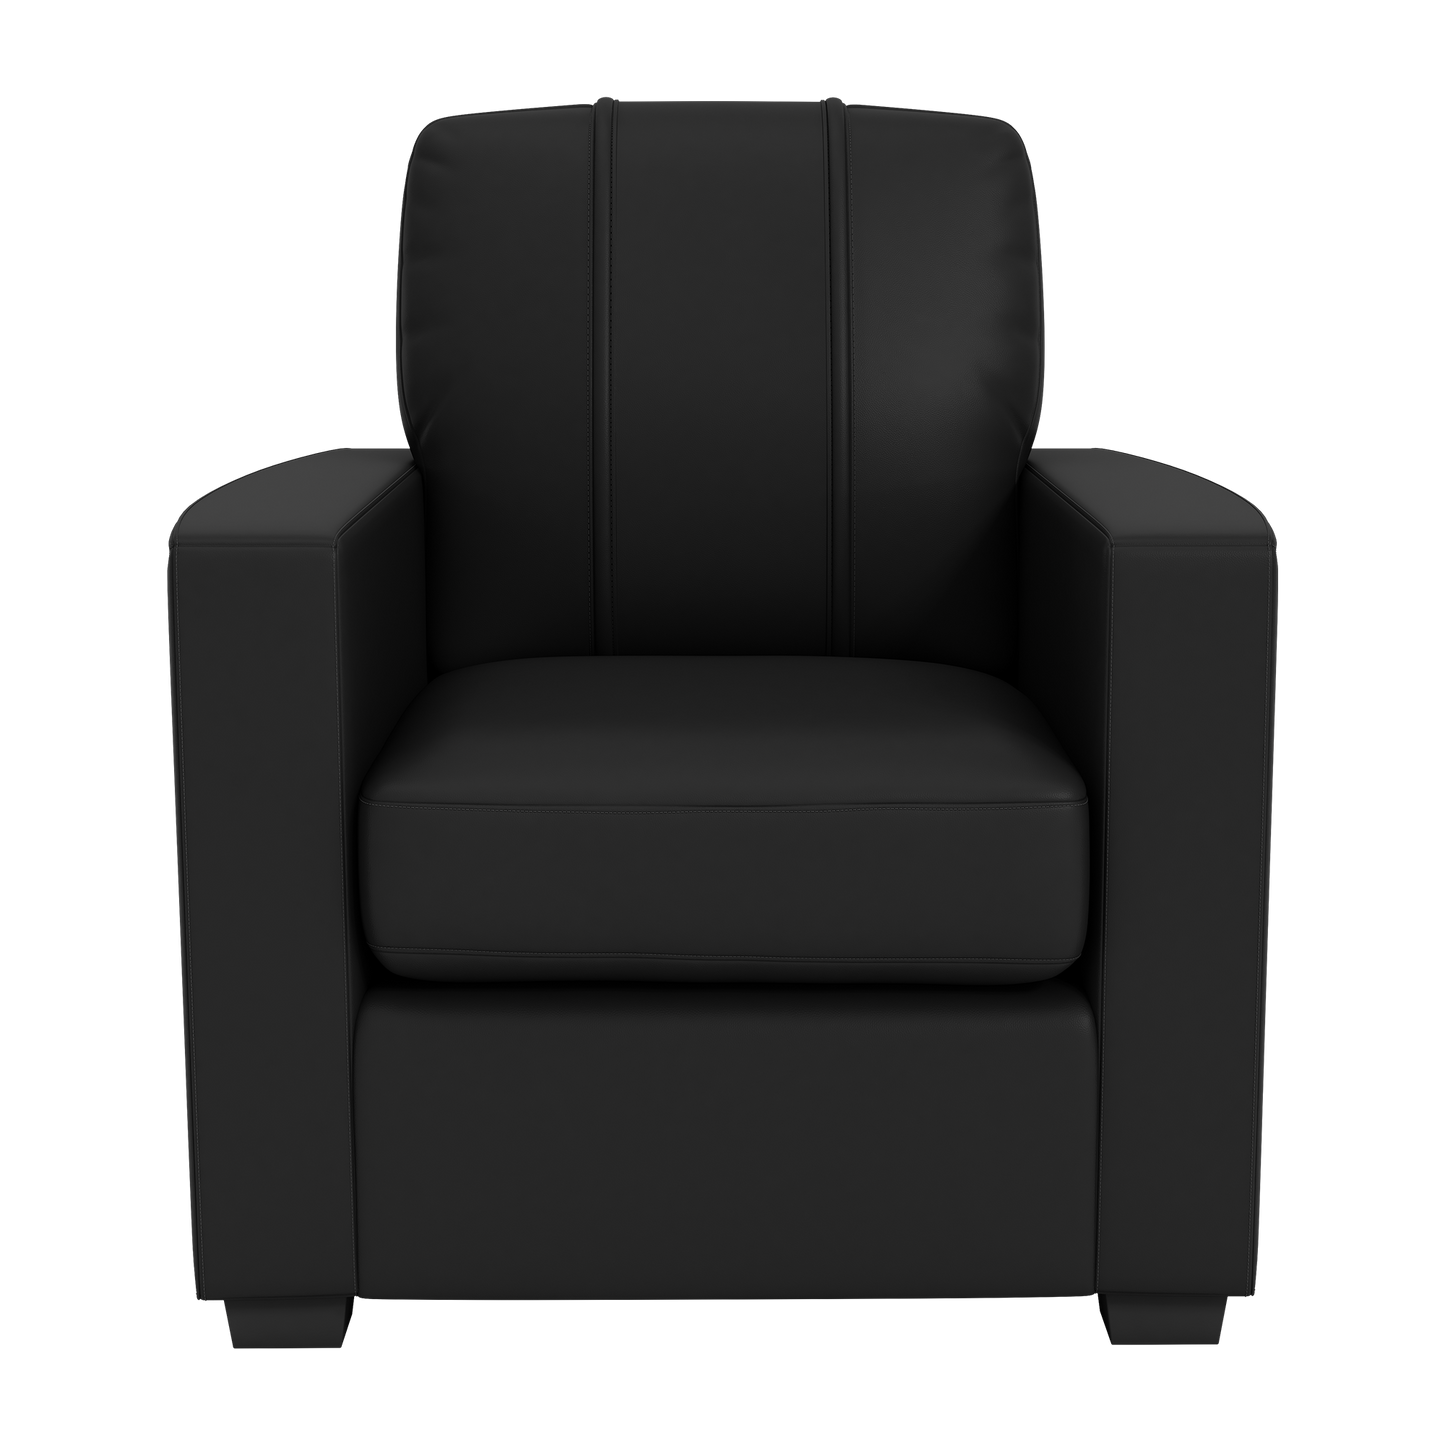 Silver Club Chair with FC Cincinnati Wordmark Logo